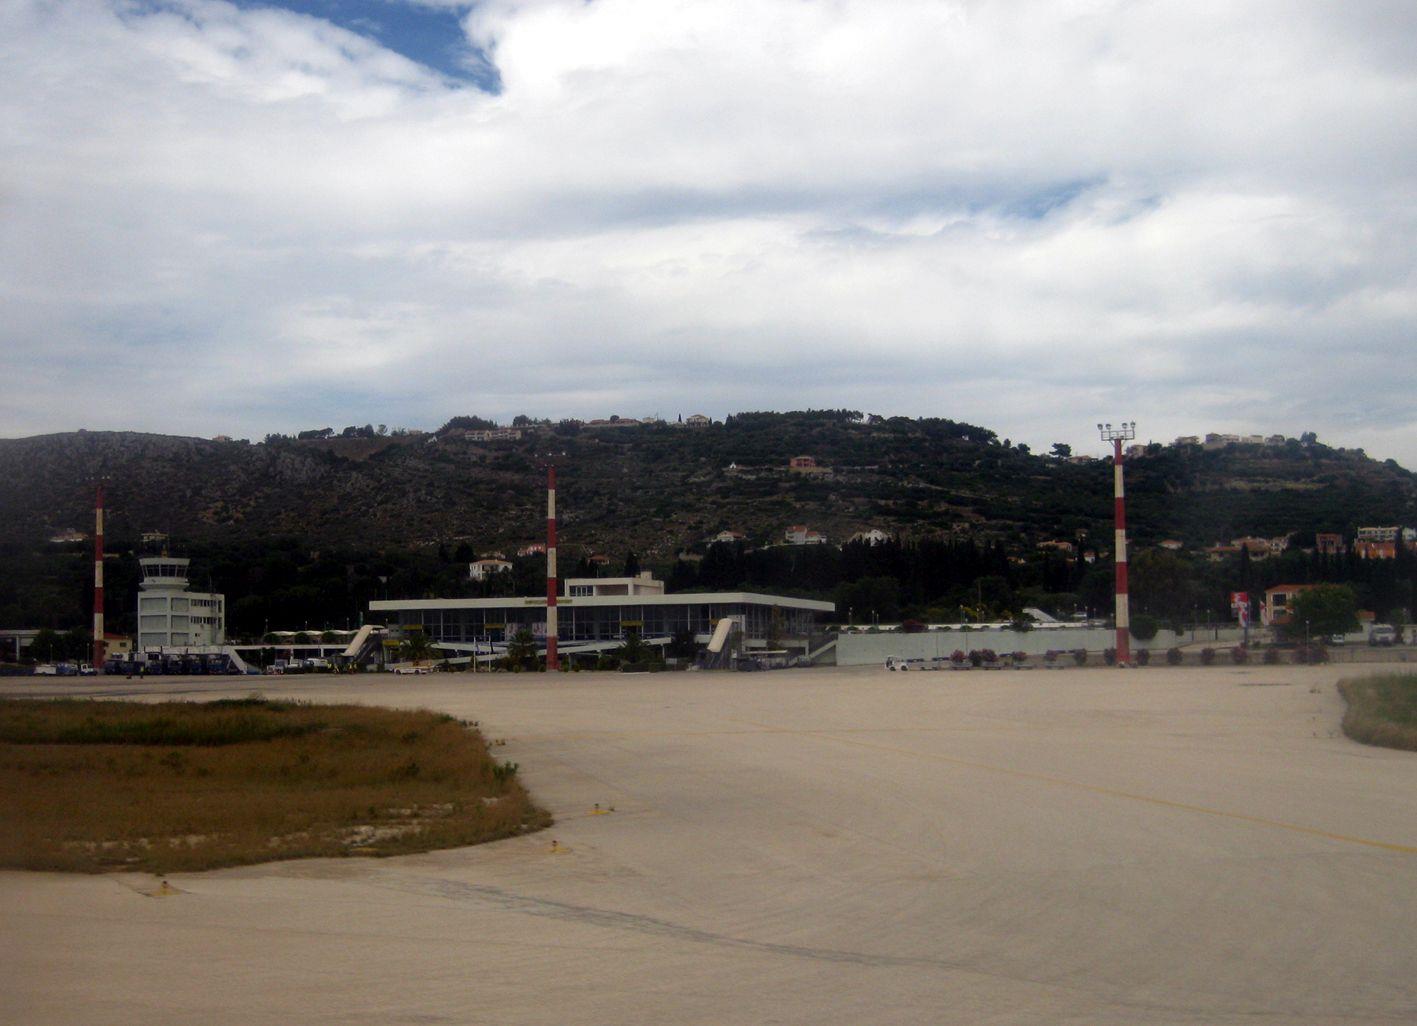 Kefallonia International Airport KEFALLINIA (Airport) KEFALLONIA